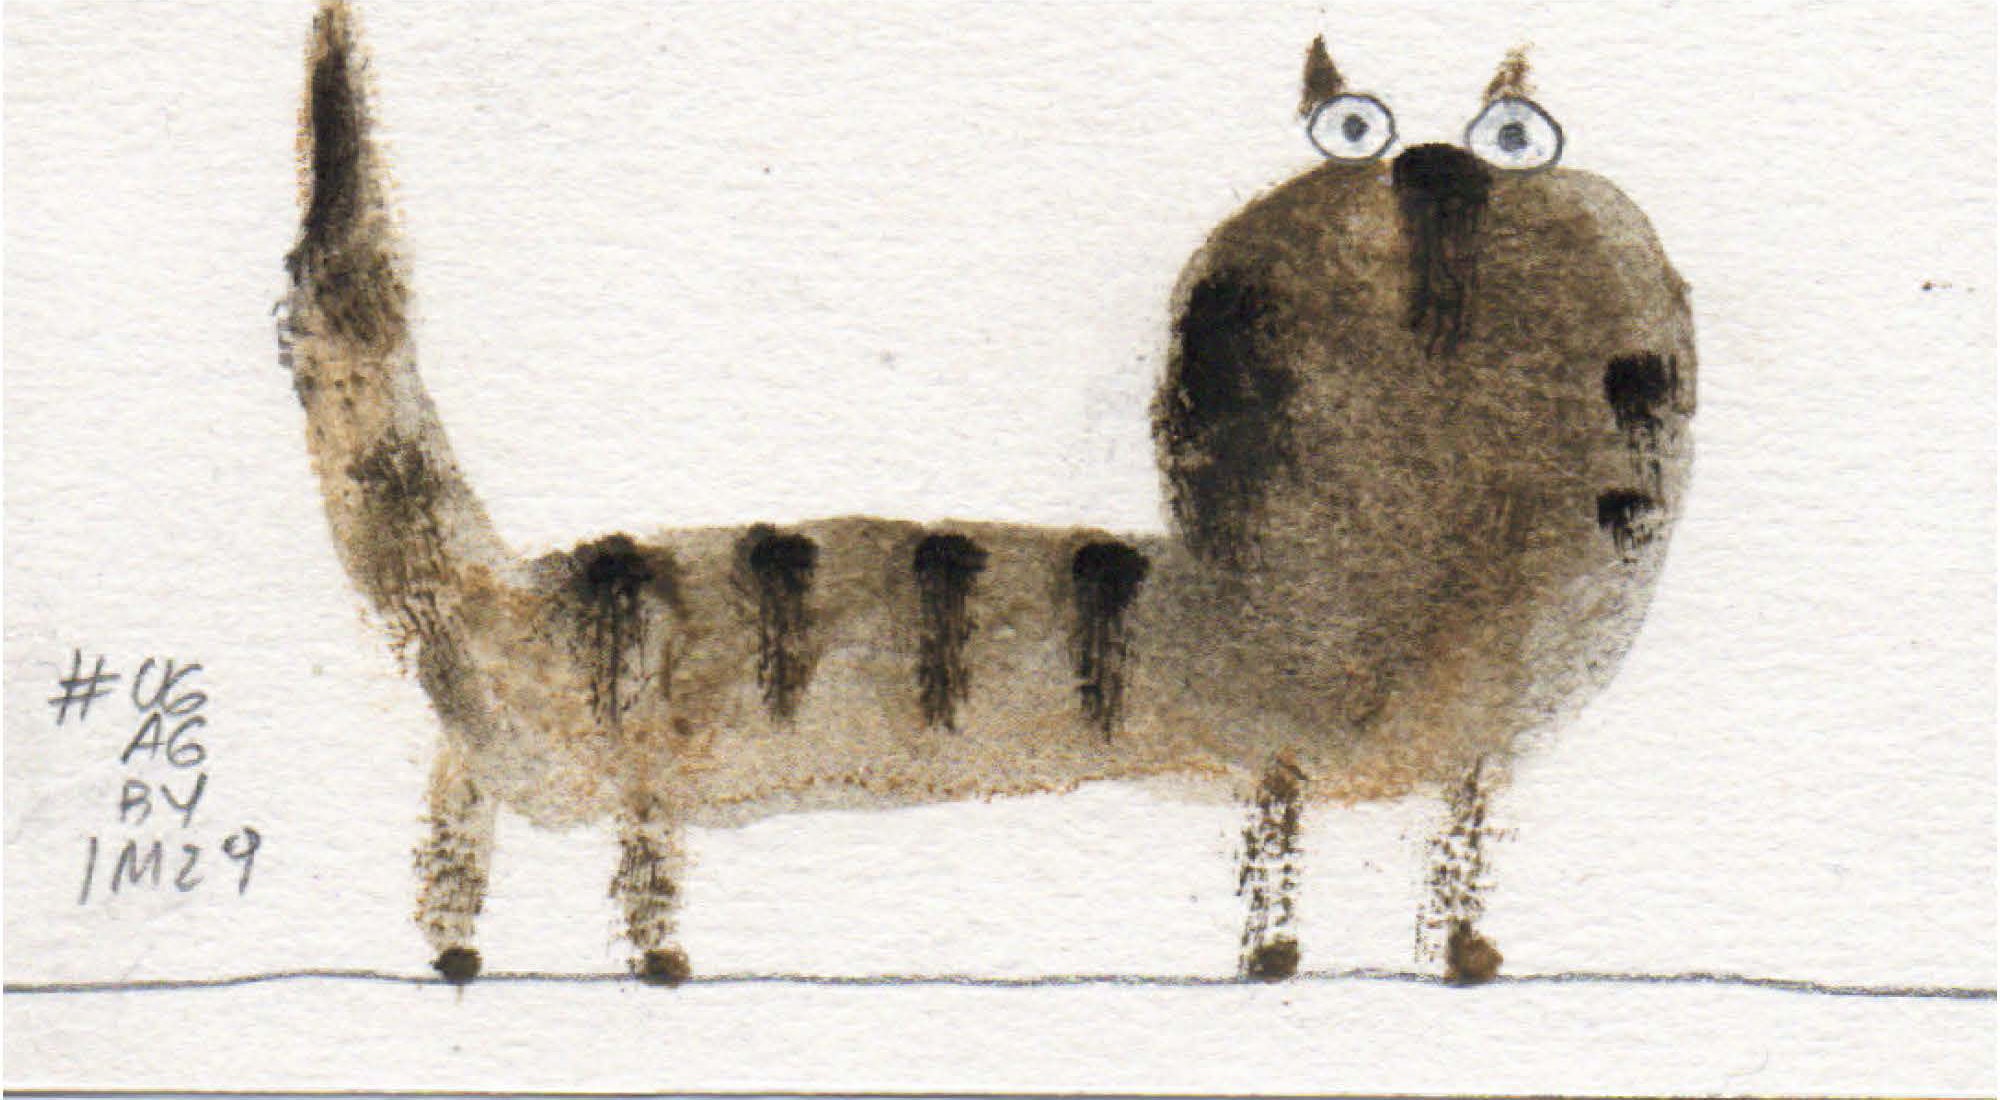 dipinto di un gatto calico in piedi con gli occhi spalancati